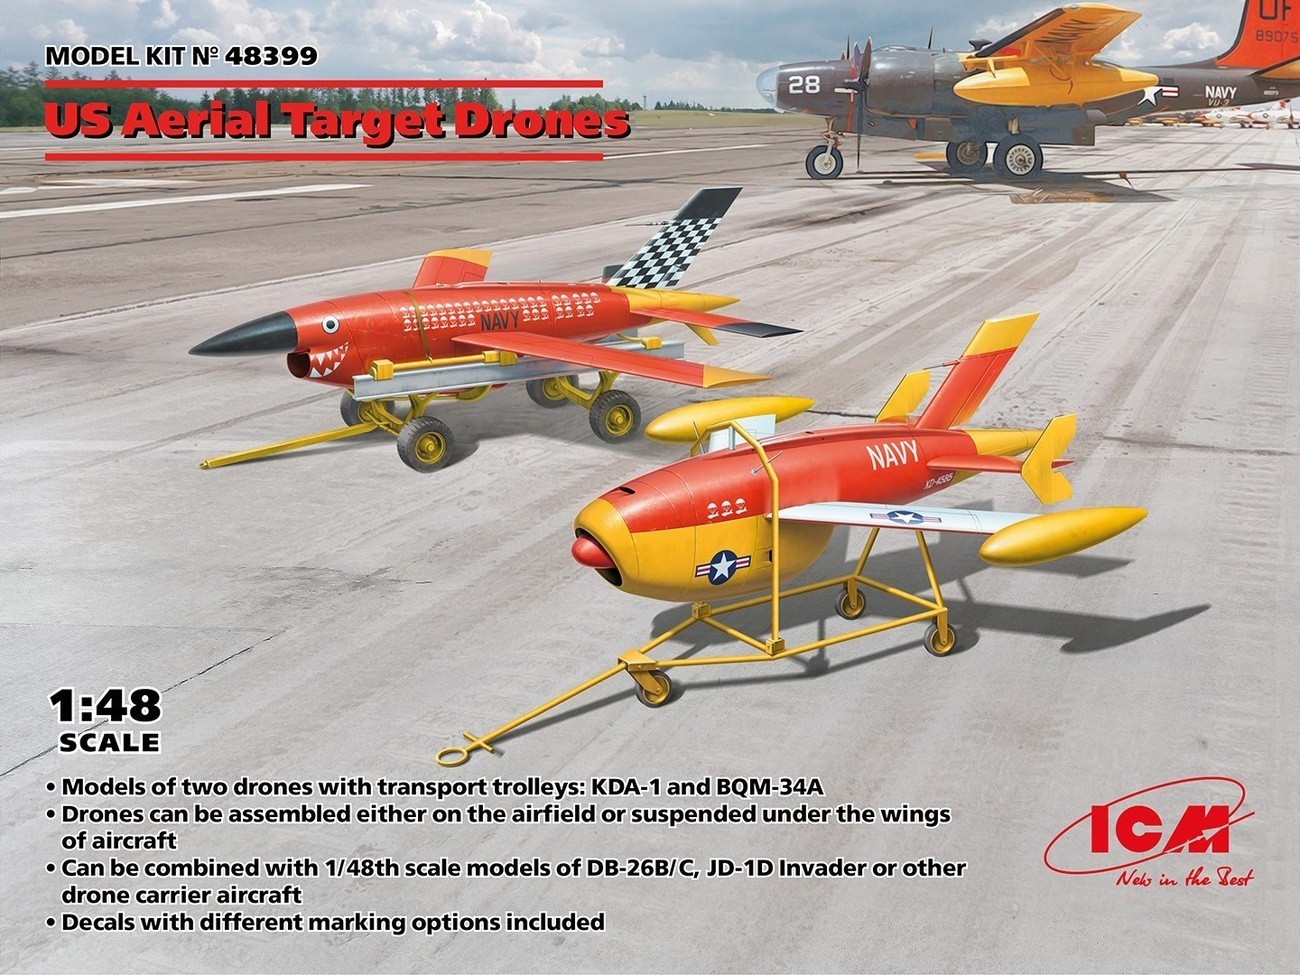 48399 - US Aerial Target Drones - 1:48